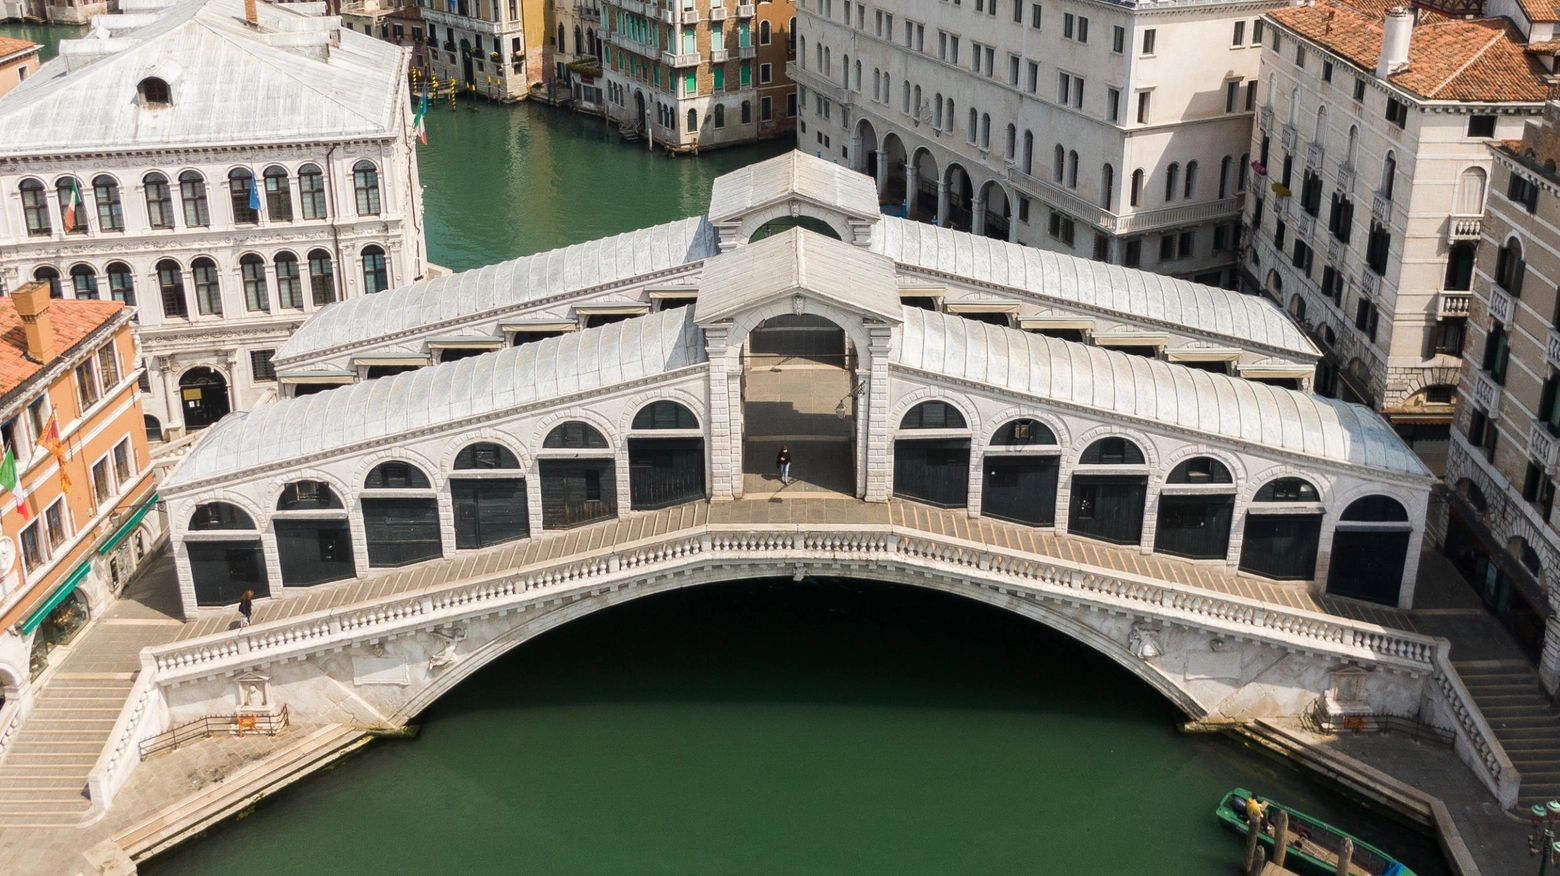 Turista a Venezia stroncata da un malore sul ponte di Rialto